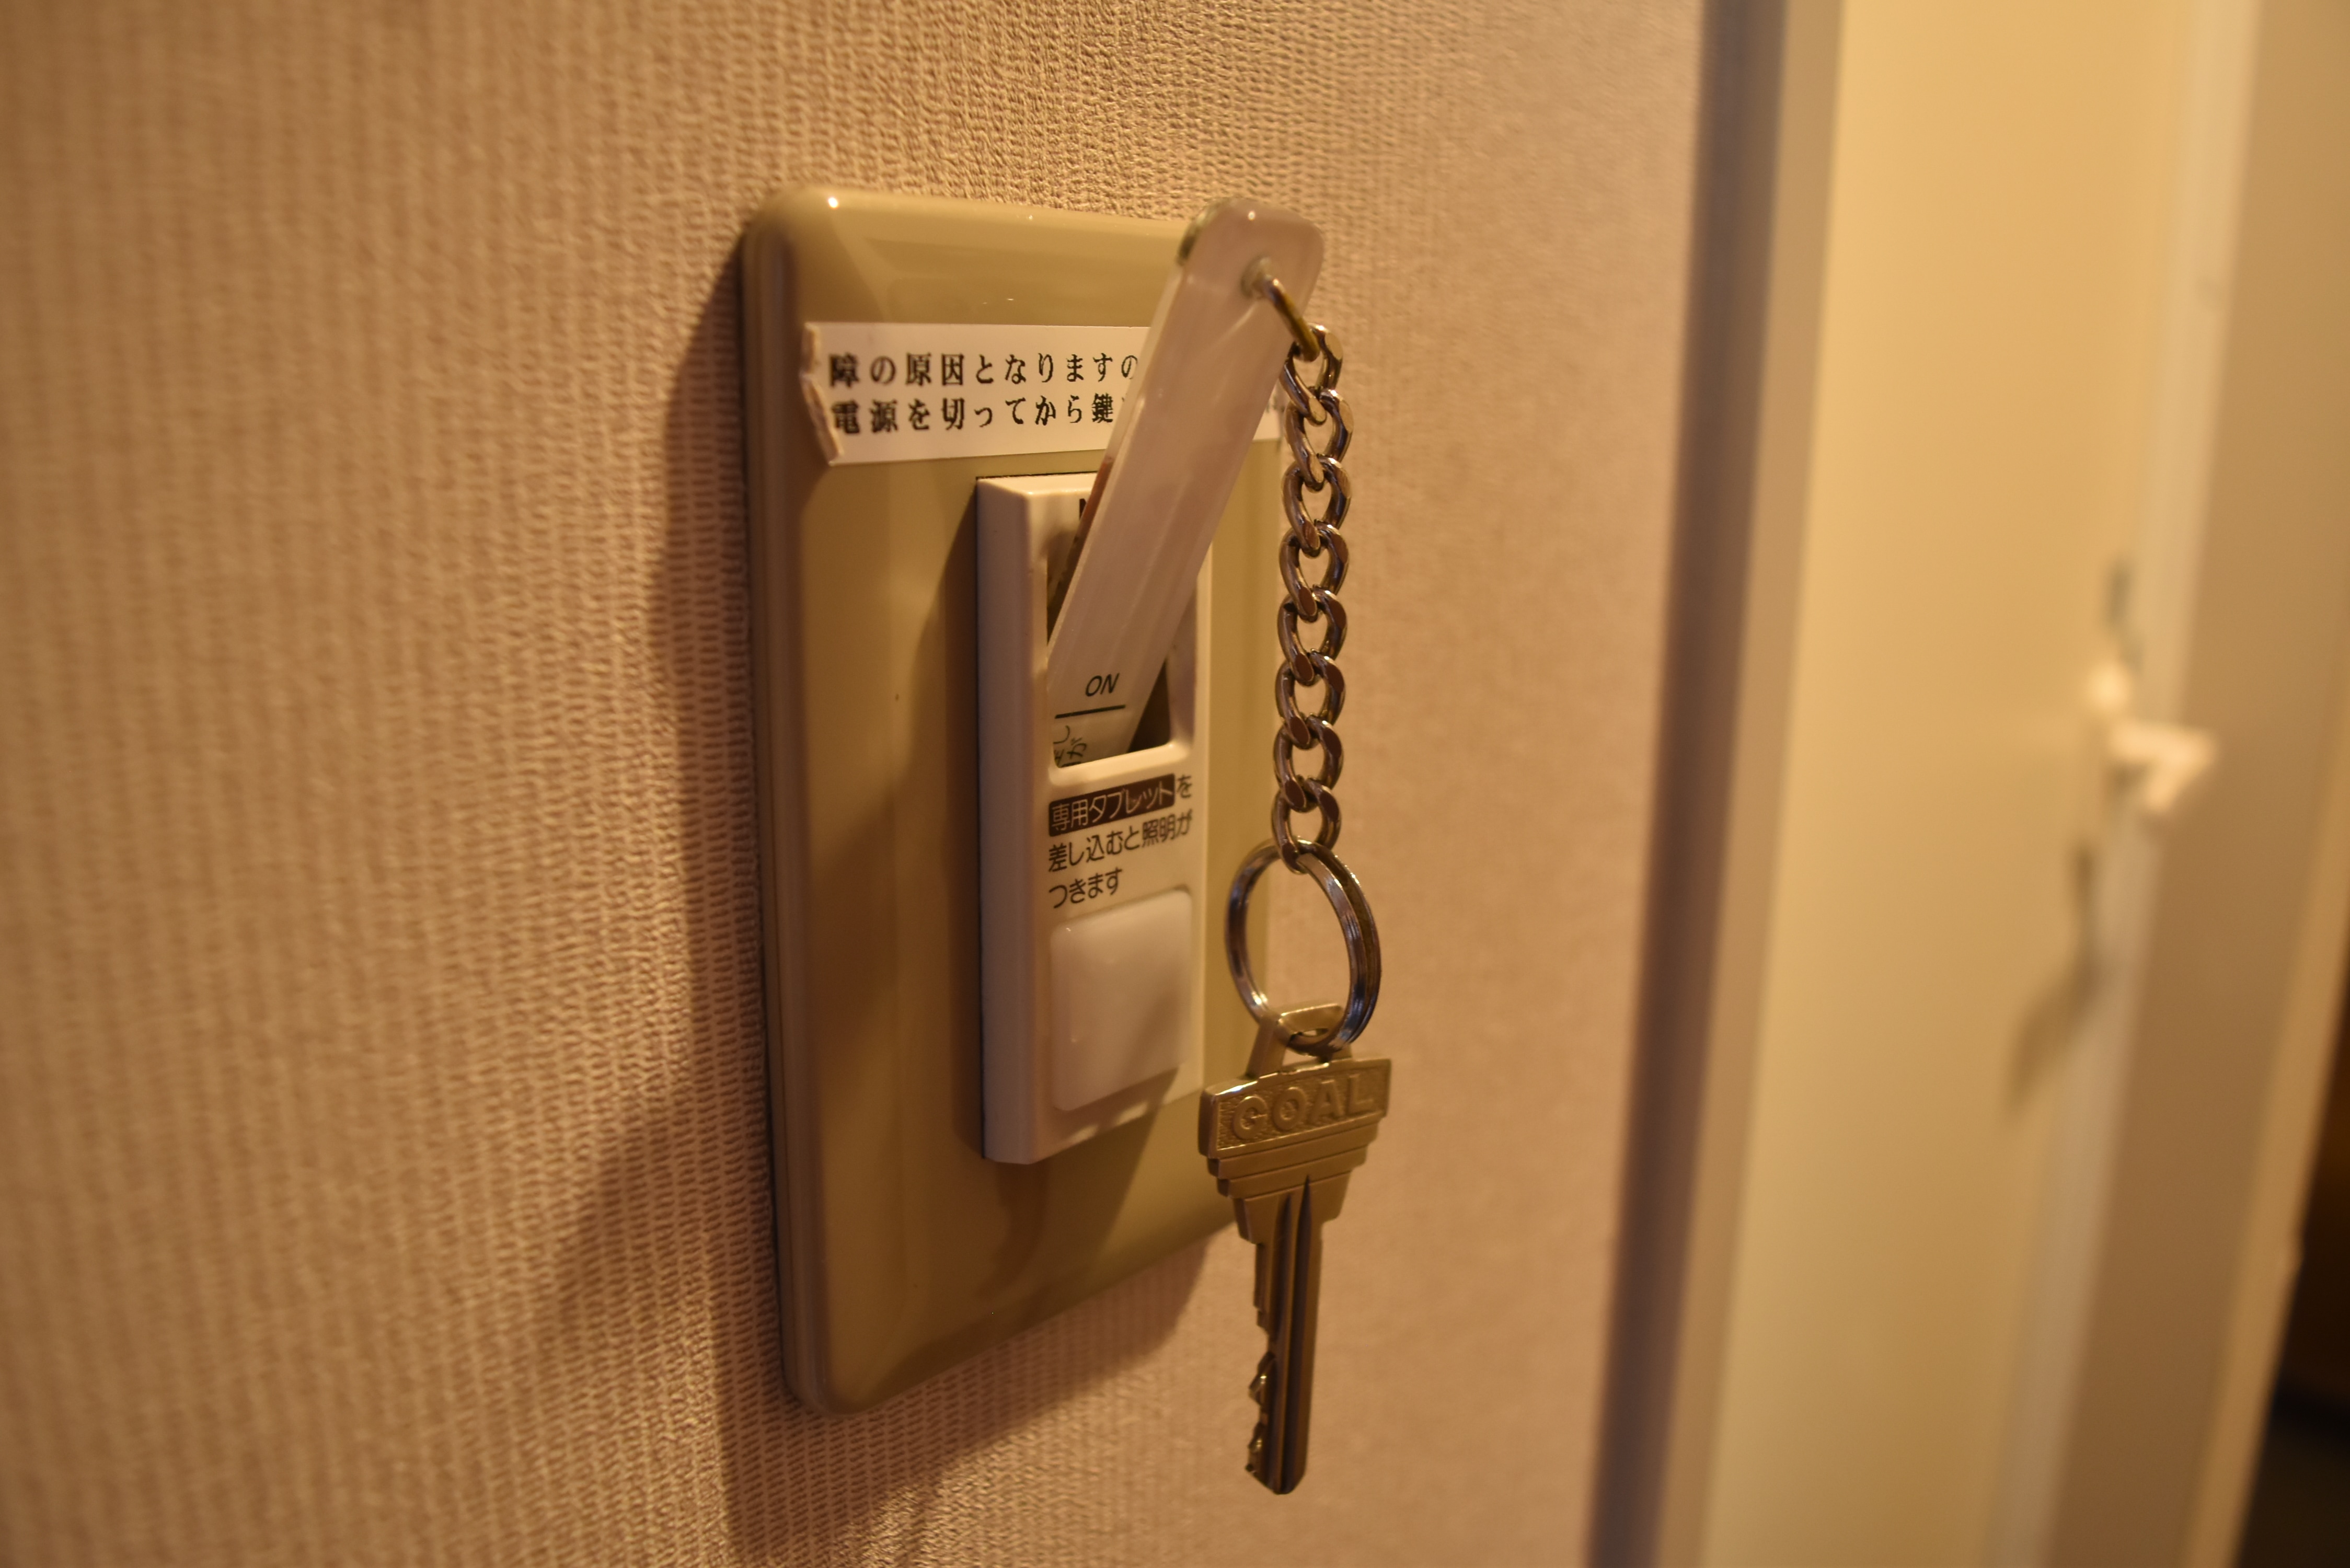 这是一种通过插入房间钥匙打开房间内电源的系统。